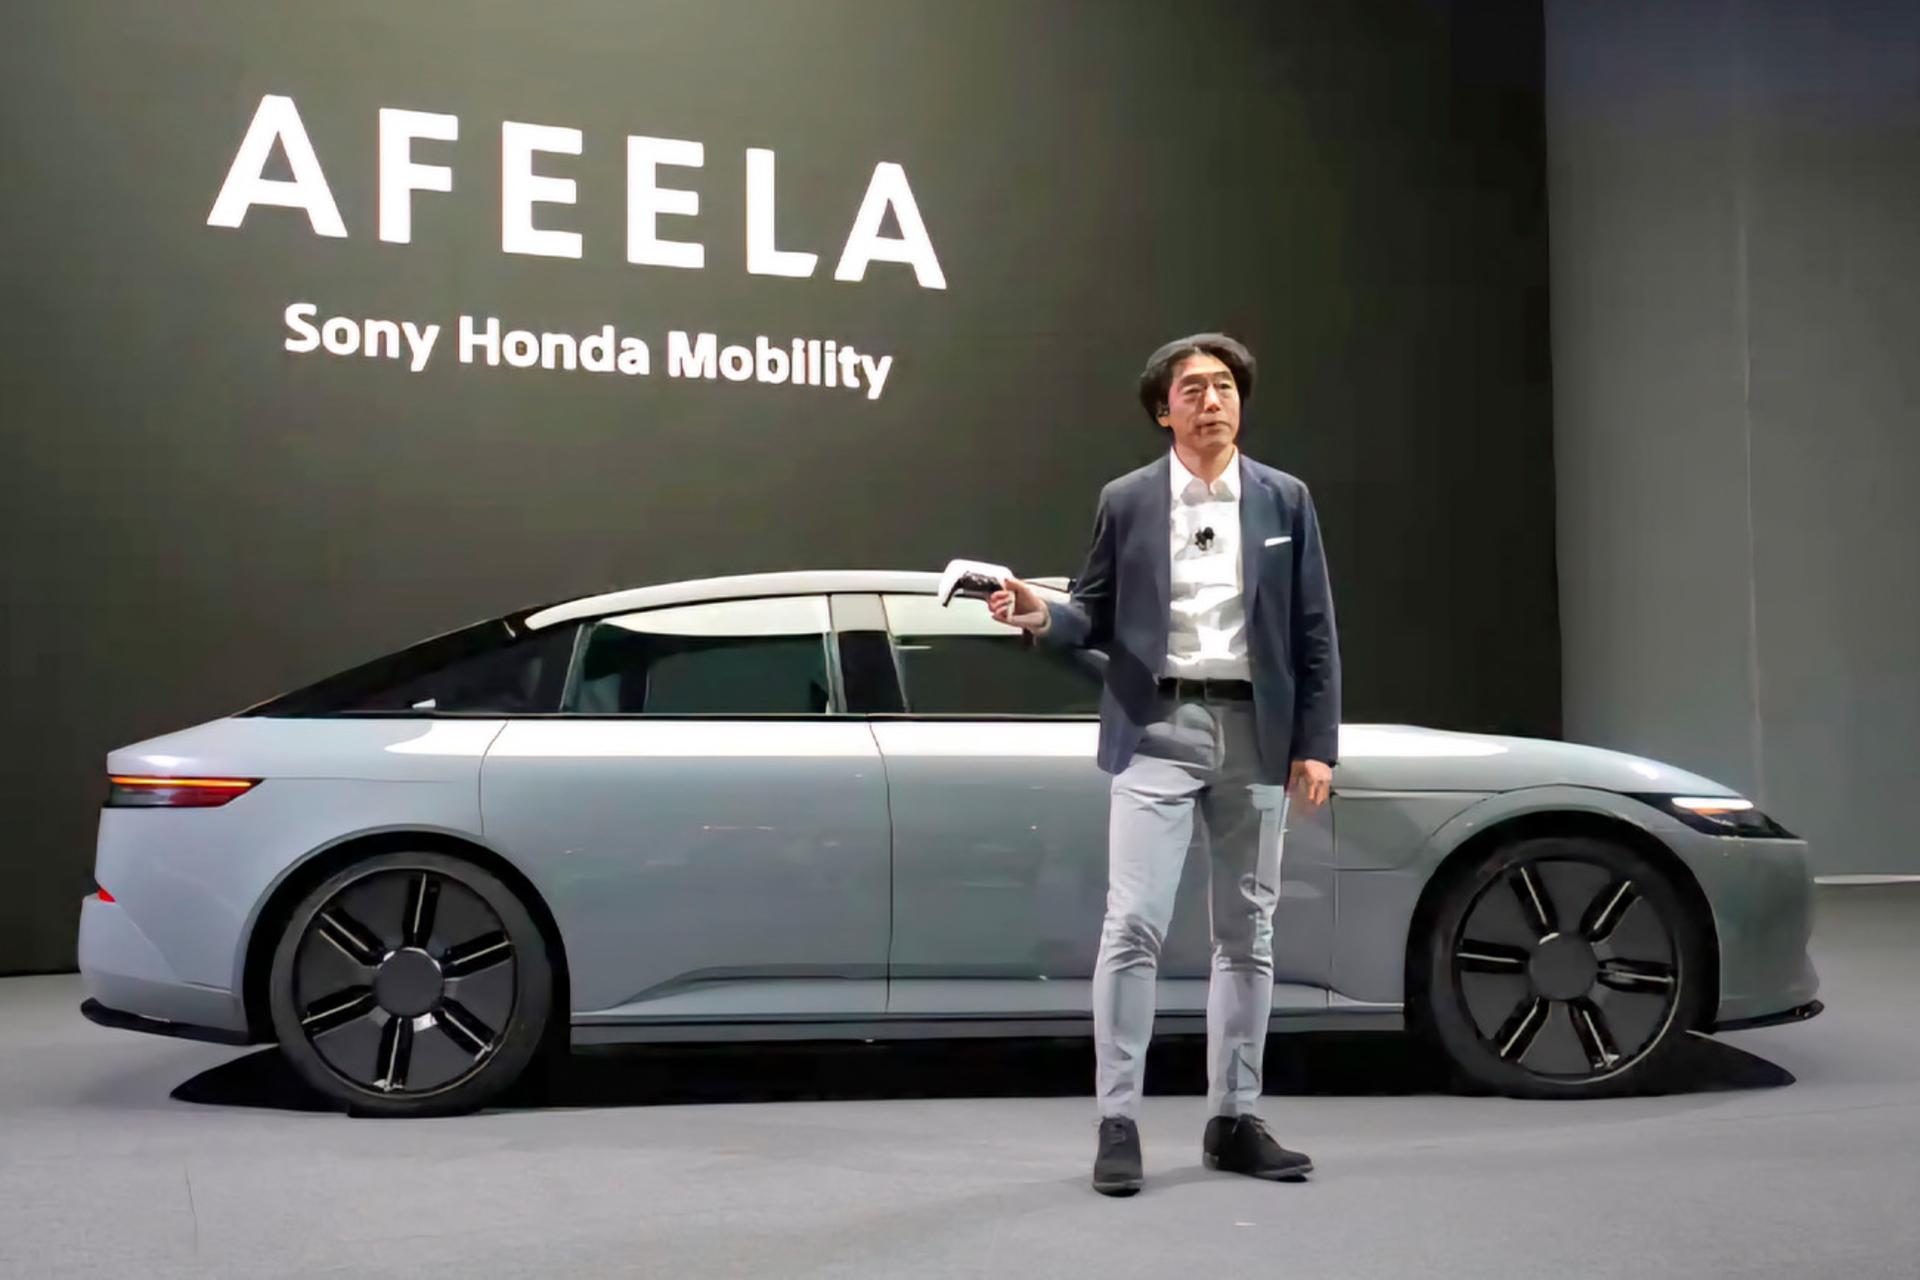 مدیرعامل سونی هوندا موبیلیتی در کنار خودروی Afeela